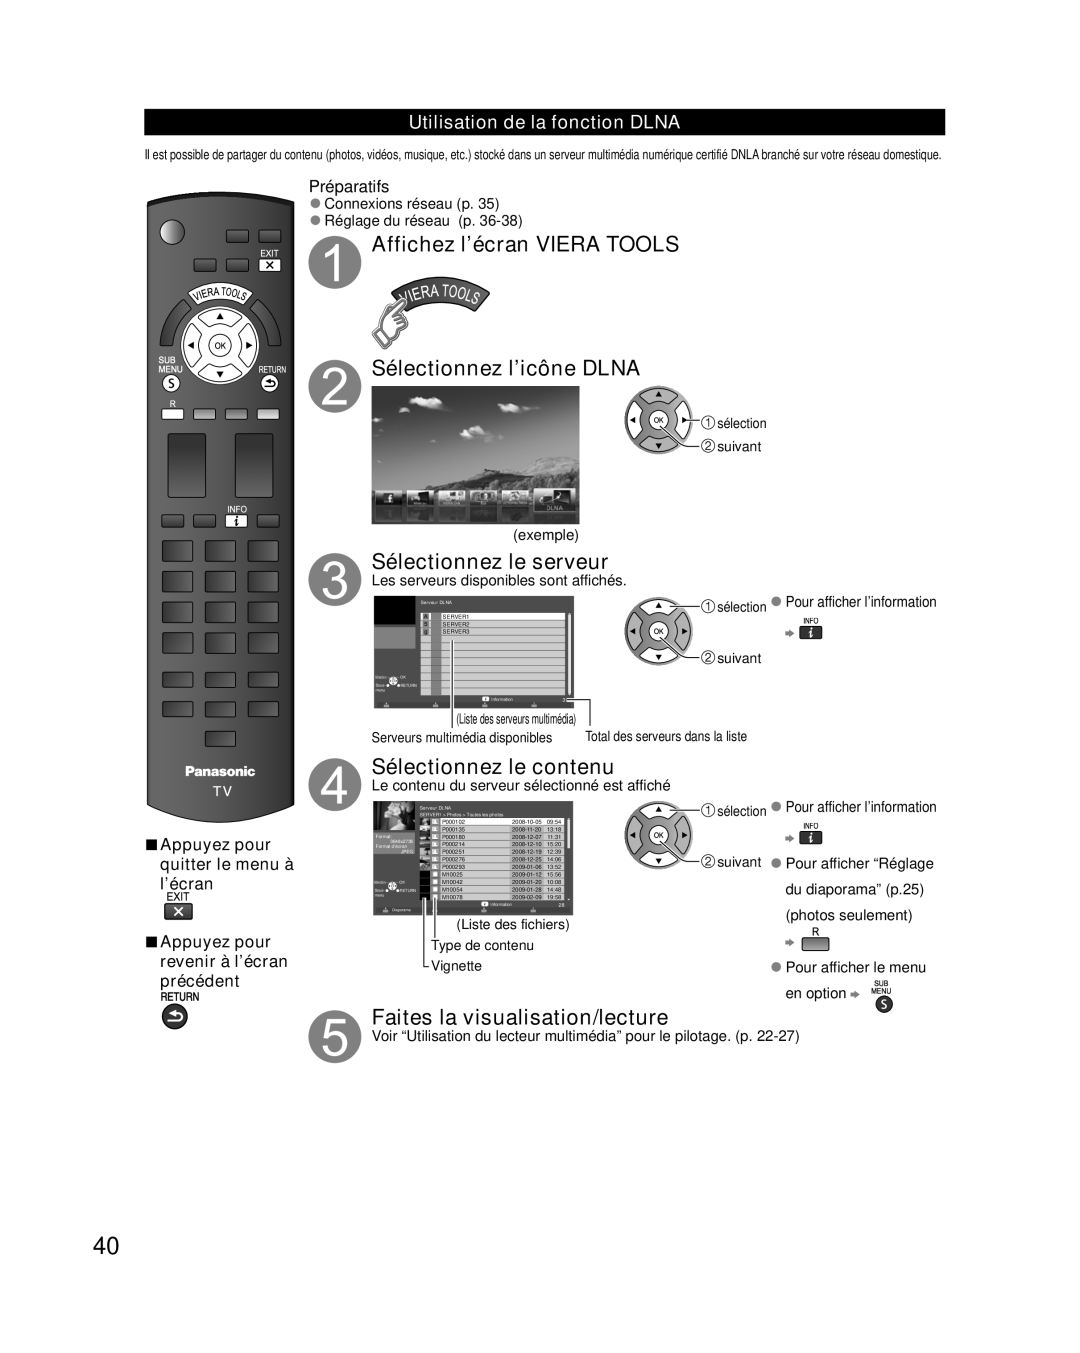 Panasonic TC-L42E30, TC-L37E3 Affichez l’écran VIERA TOOLS Sélectionnez l’icône DLNA, Sélectionnez le serveur, Préparatifs 